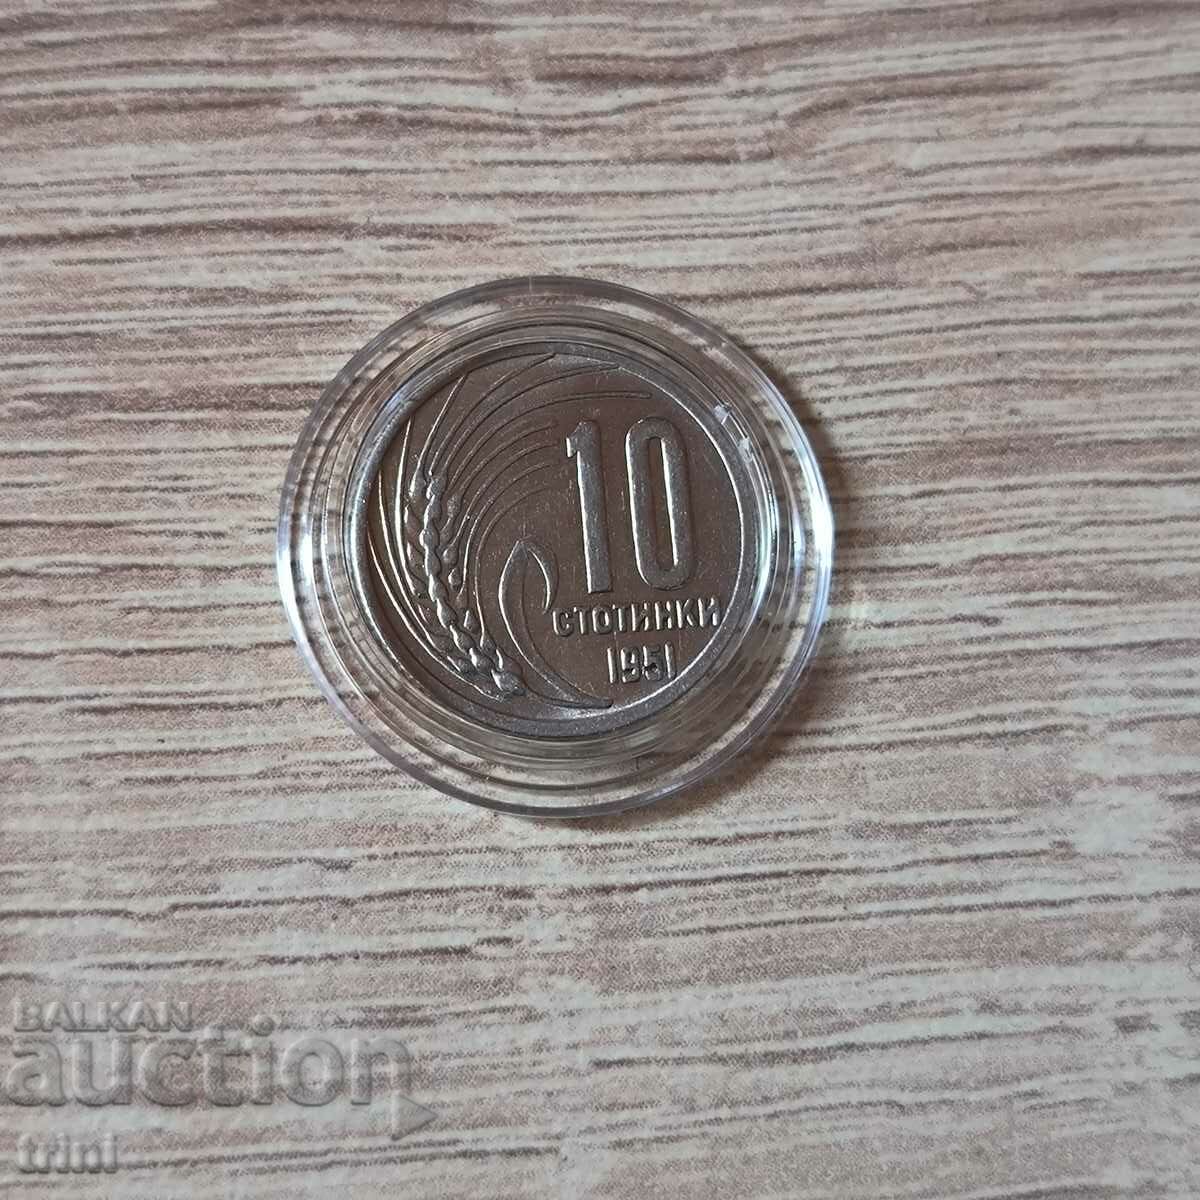 10 σεντς 1951